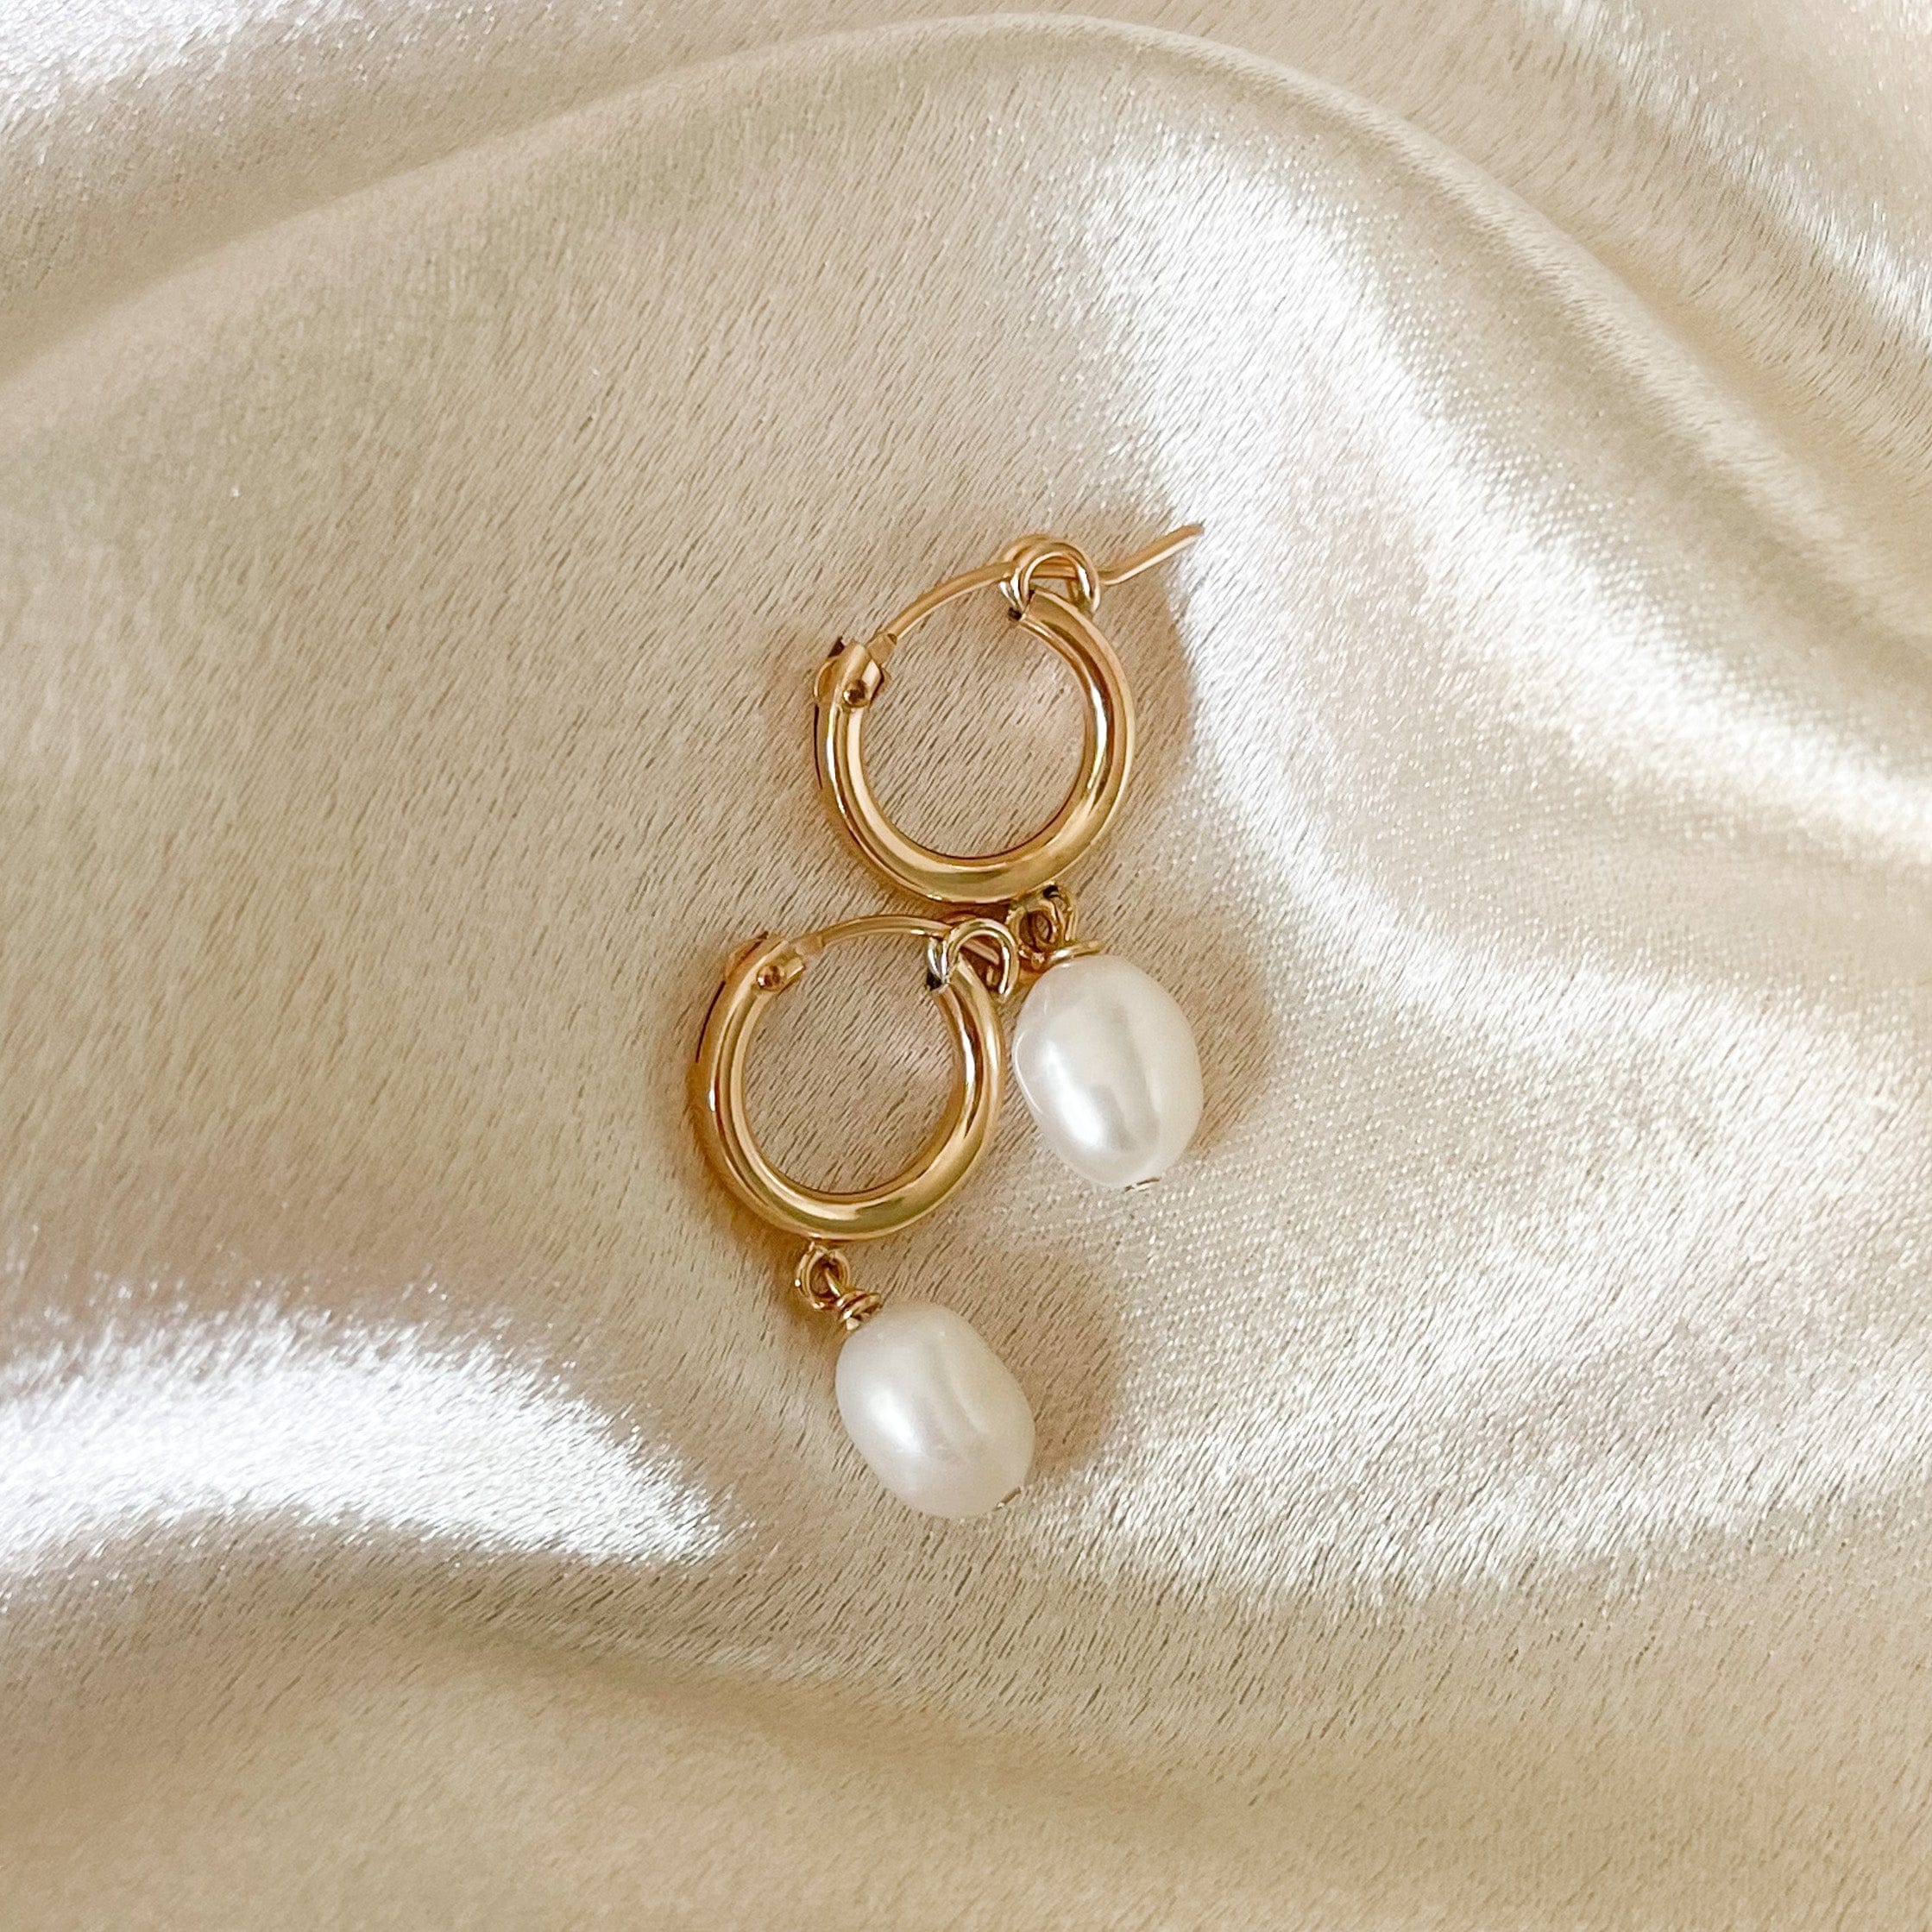 14k Gold Filled Earrings for Women | Huggie, Stud & Jewelry Sets ...